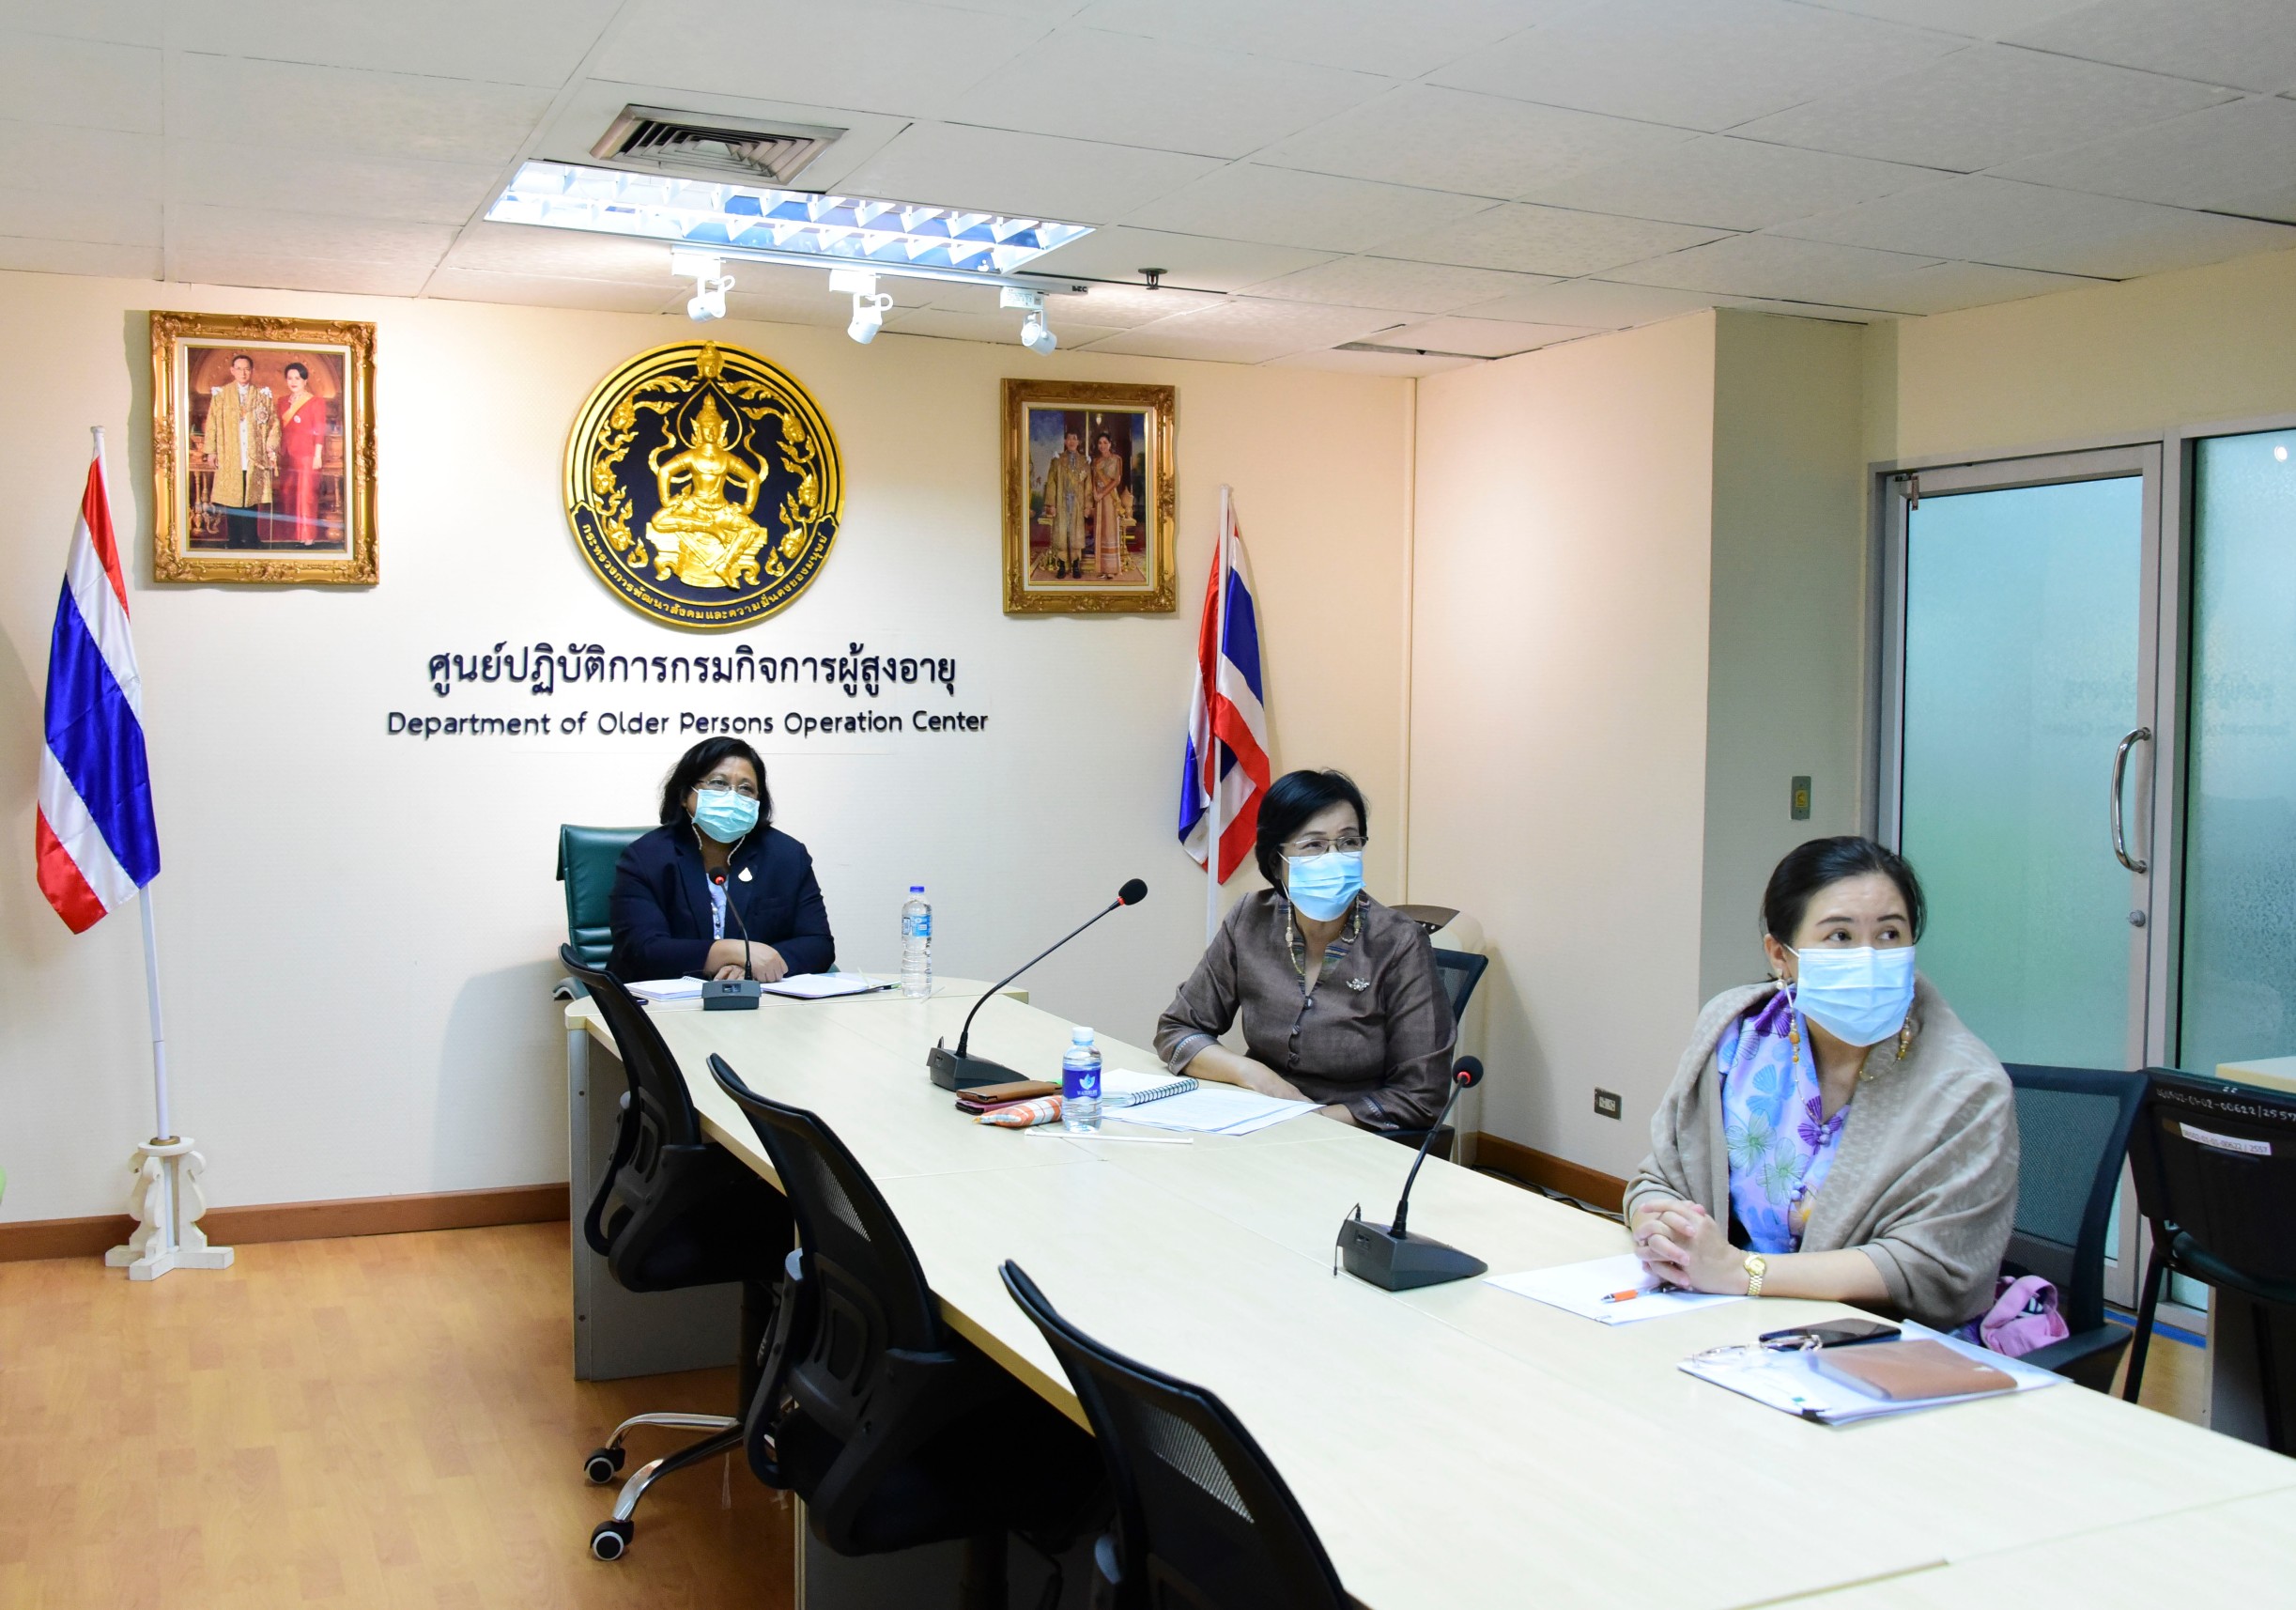 การประเมินบทบาทของ อปท. ในการดูแลระยะยาวในชุมชนประเทศไทย (Assessment on roles of local authorities on Long-term care in the communities in Thailand)